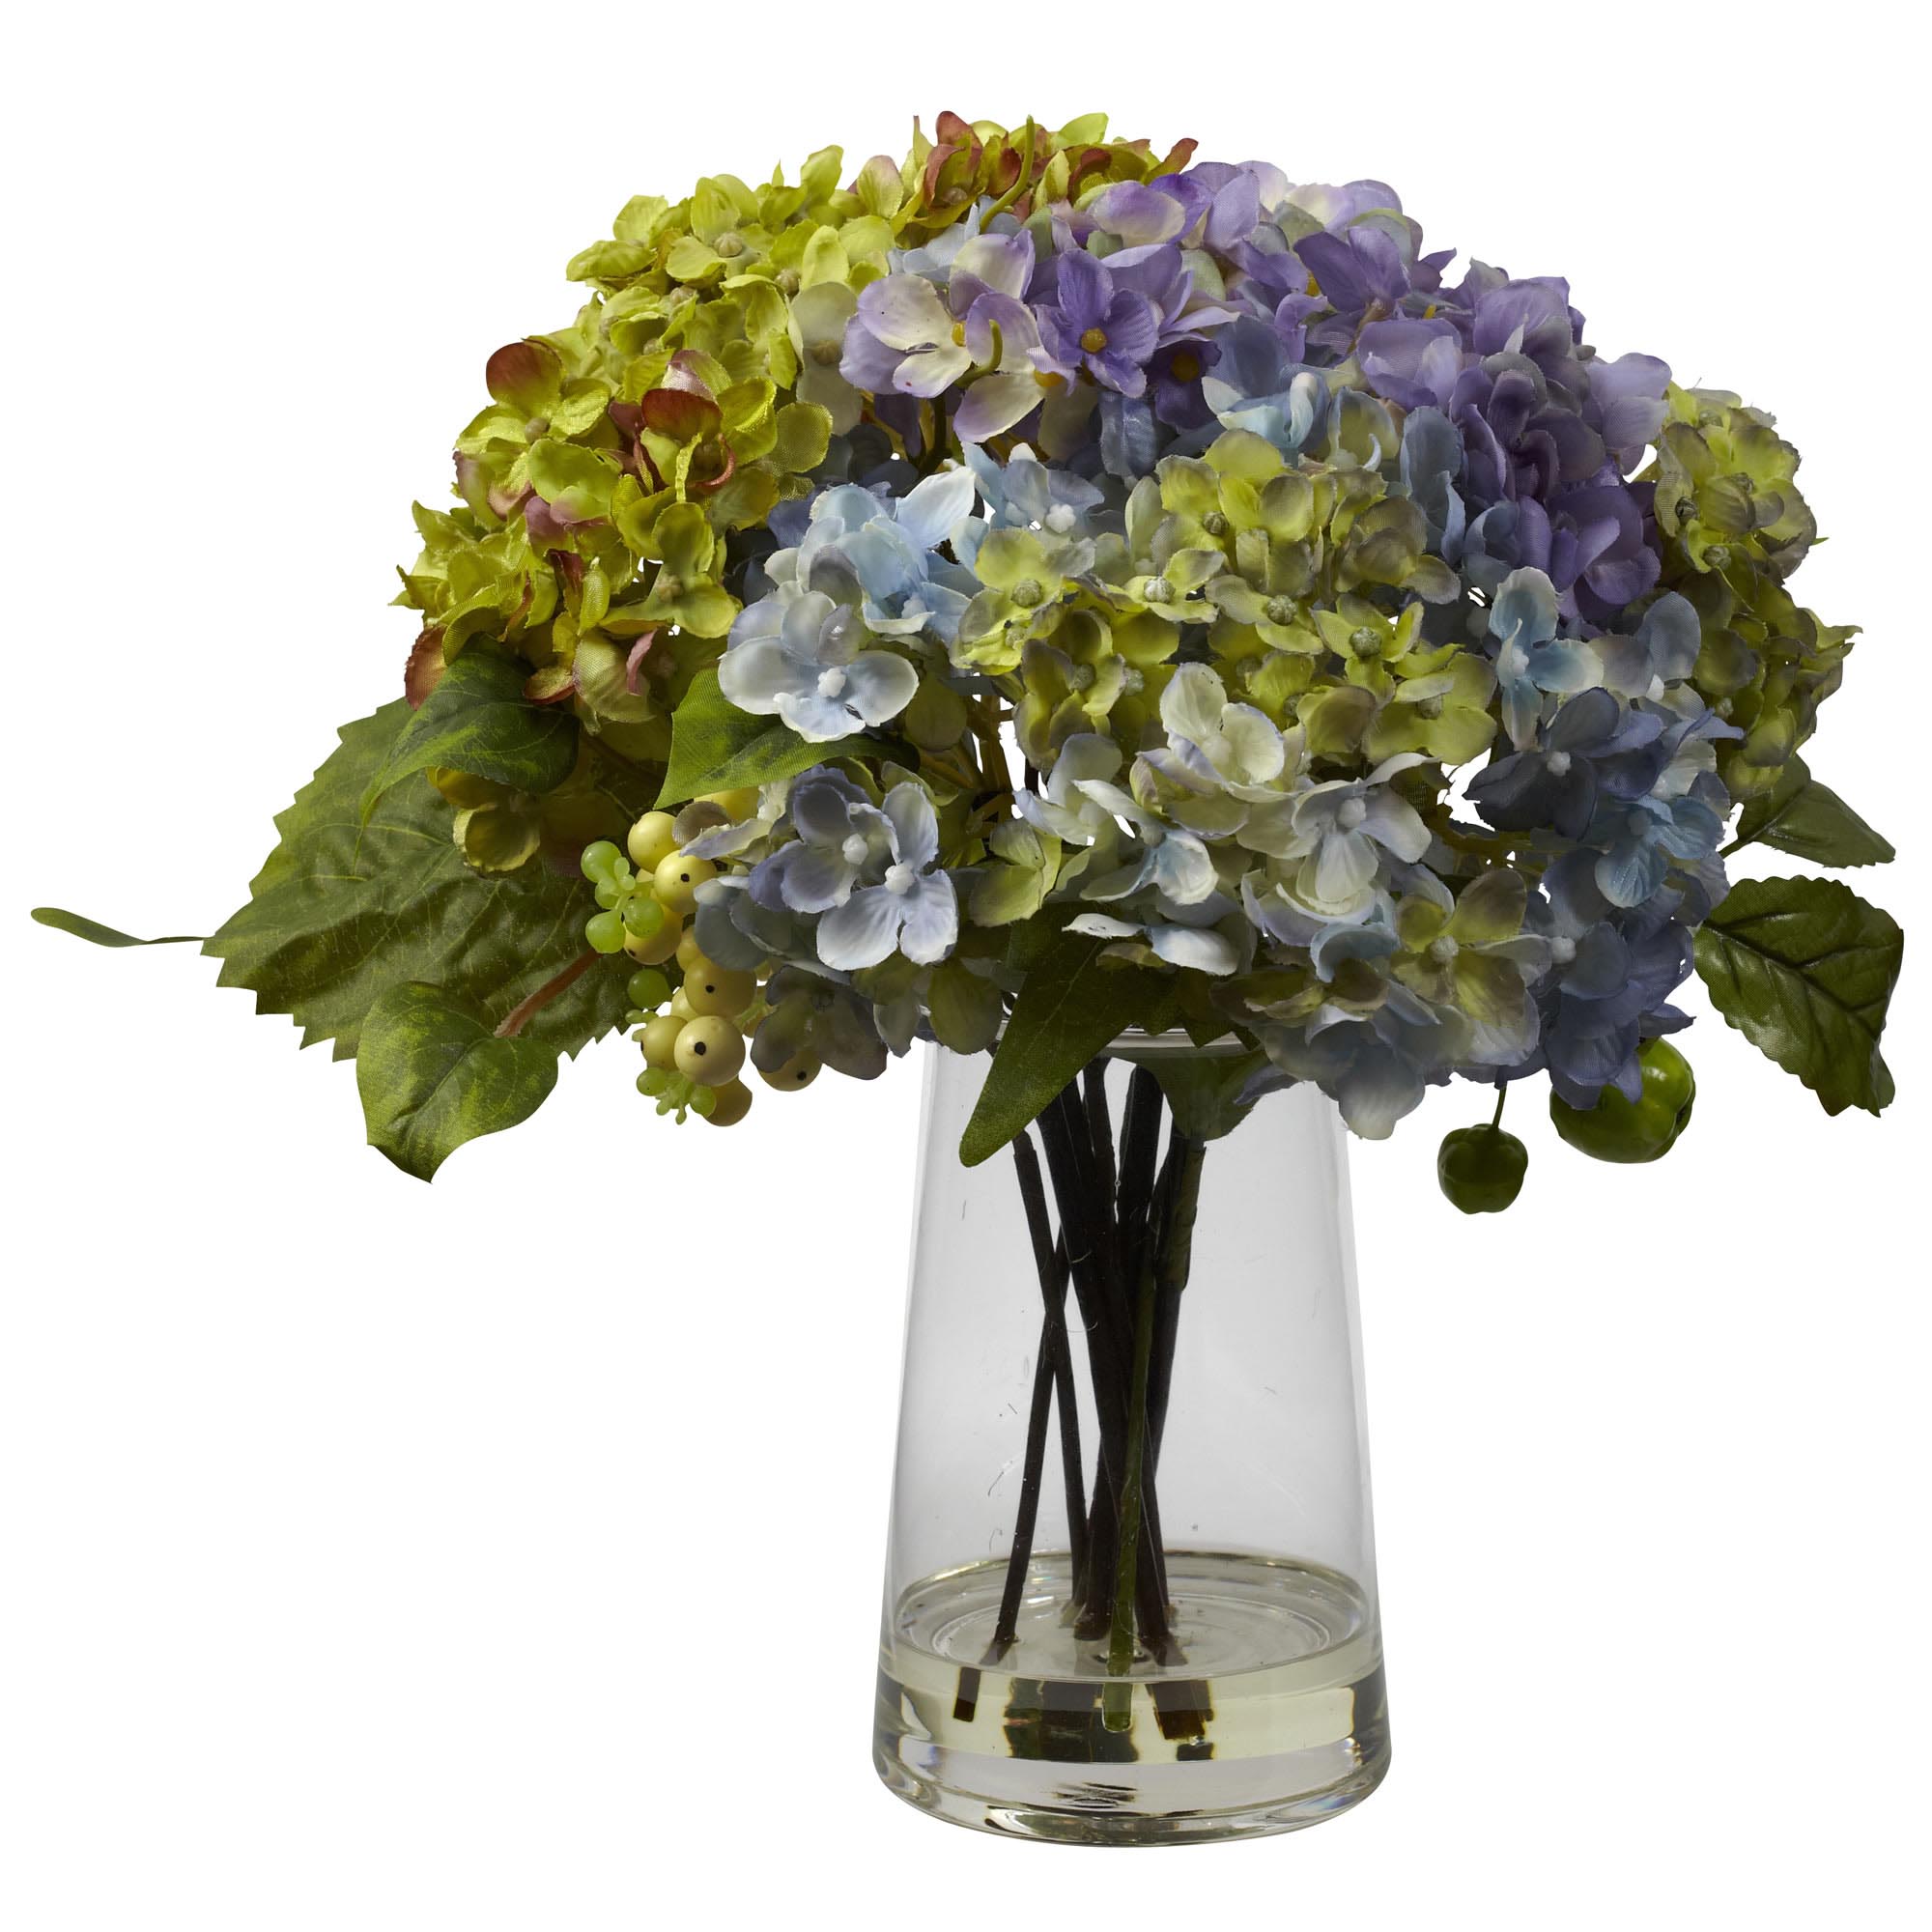 11 Inch Silk Hydrangea Arrangement In Glass Vase